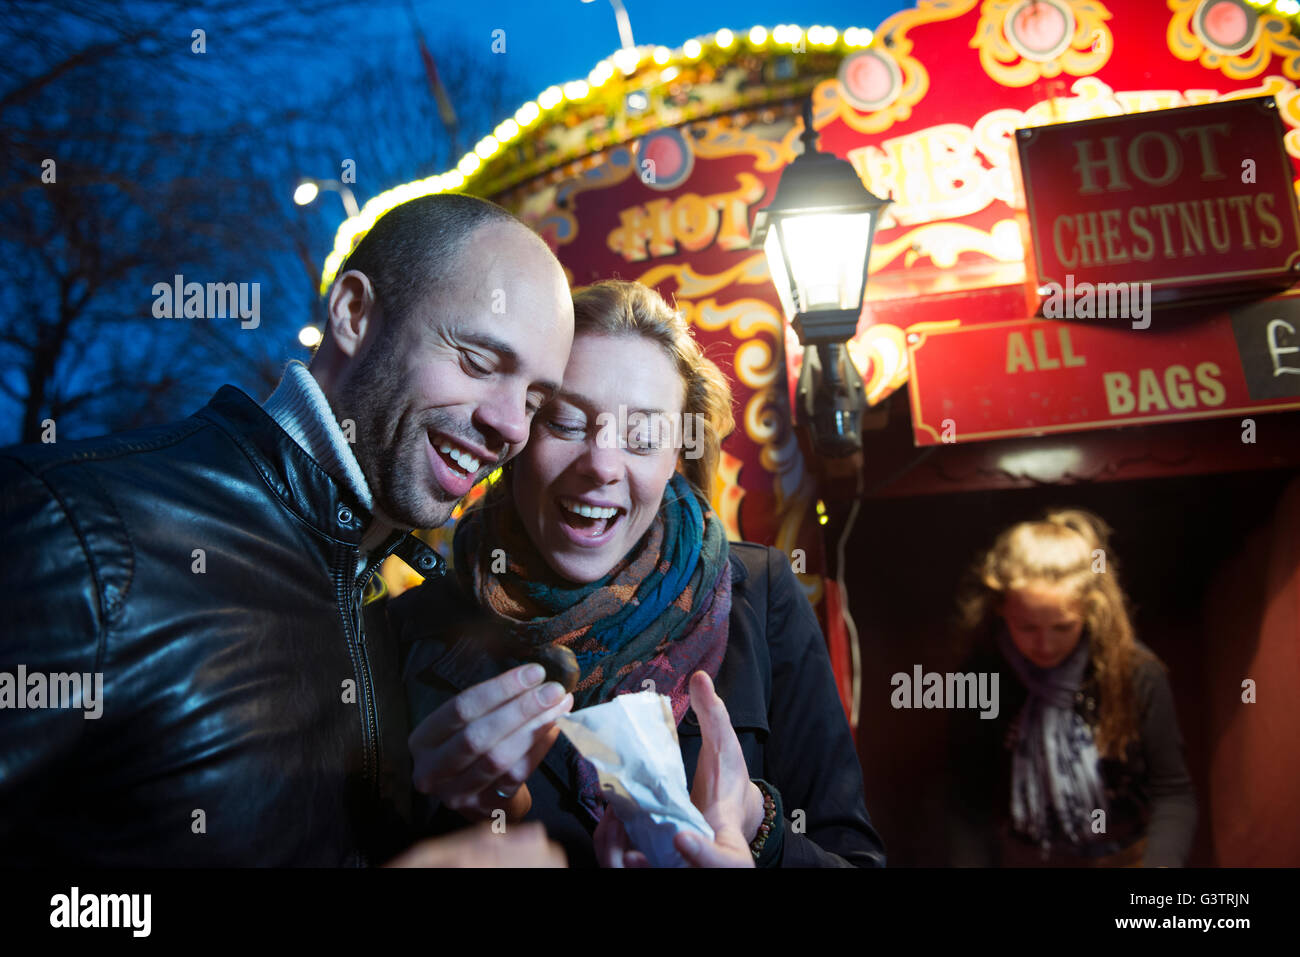 Un couple debout devant un vendeur vente de marrons chauds sur la rive sud de Londres la nuit. Banque D'Images